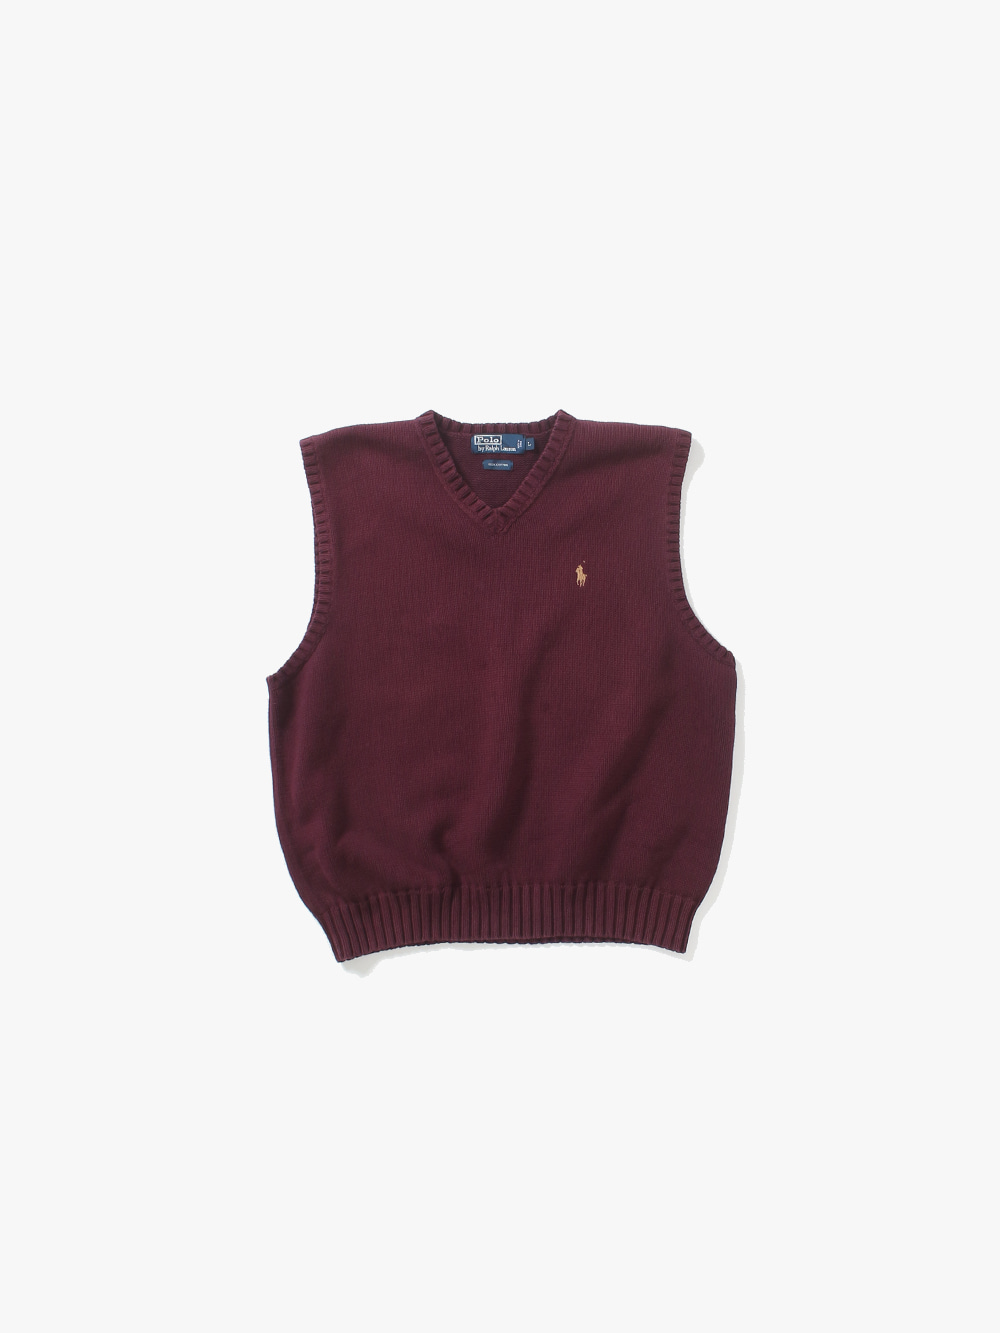 [ L ] Polo Ralph Lauren Knit Vest (6297)